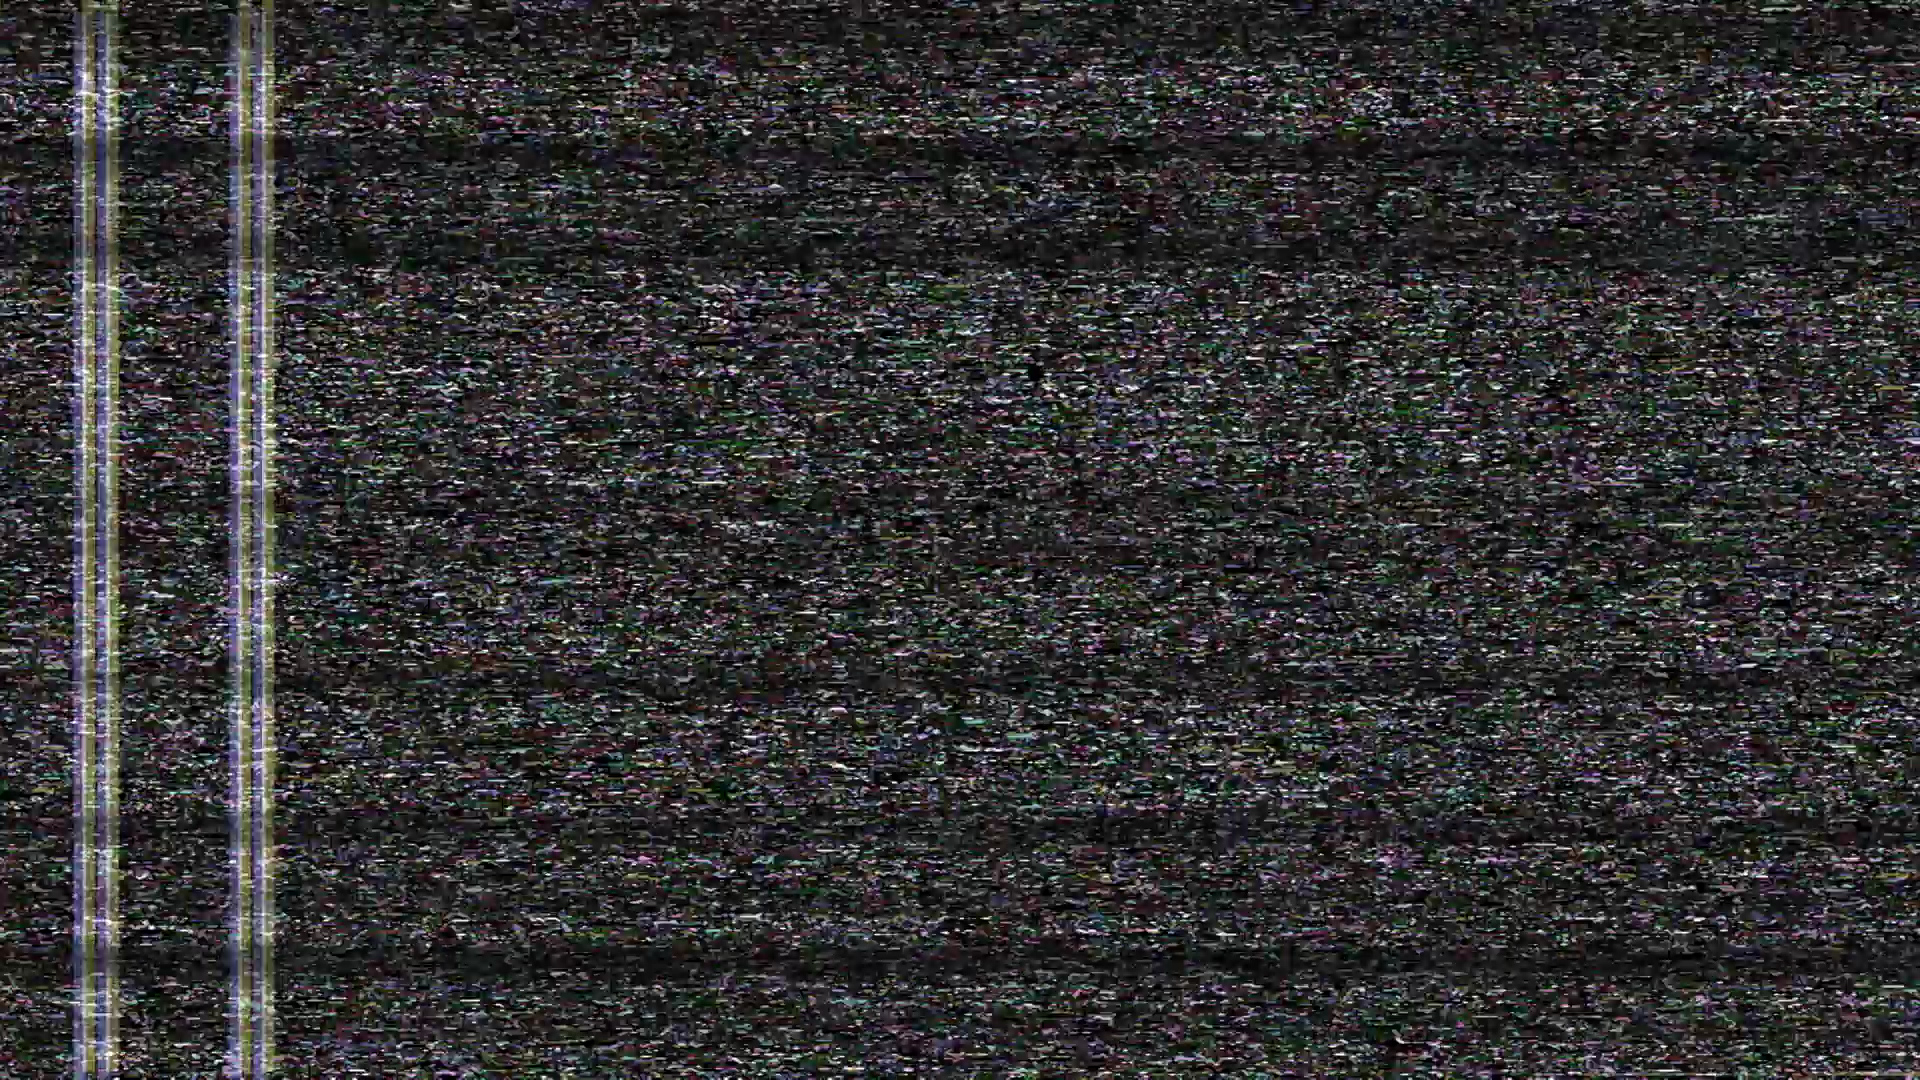 TV Static Wallpaper - WallpaperSafari Tv Static Lines.